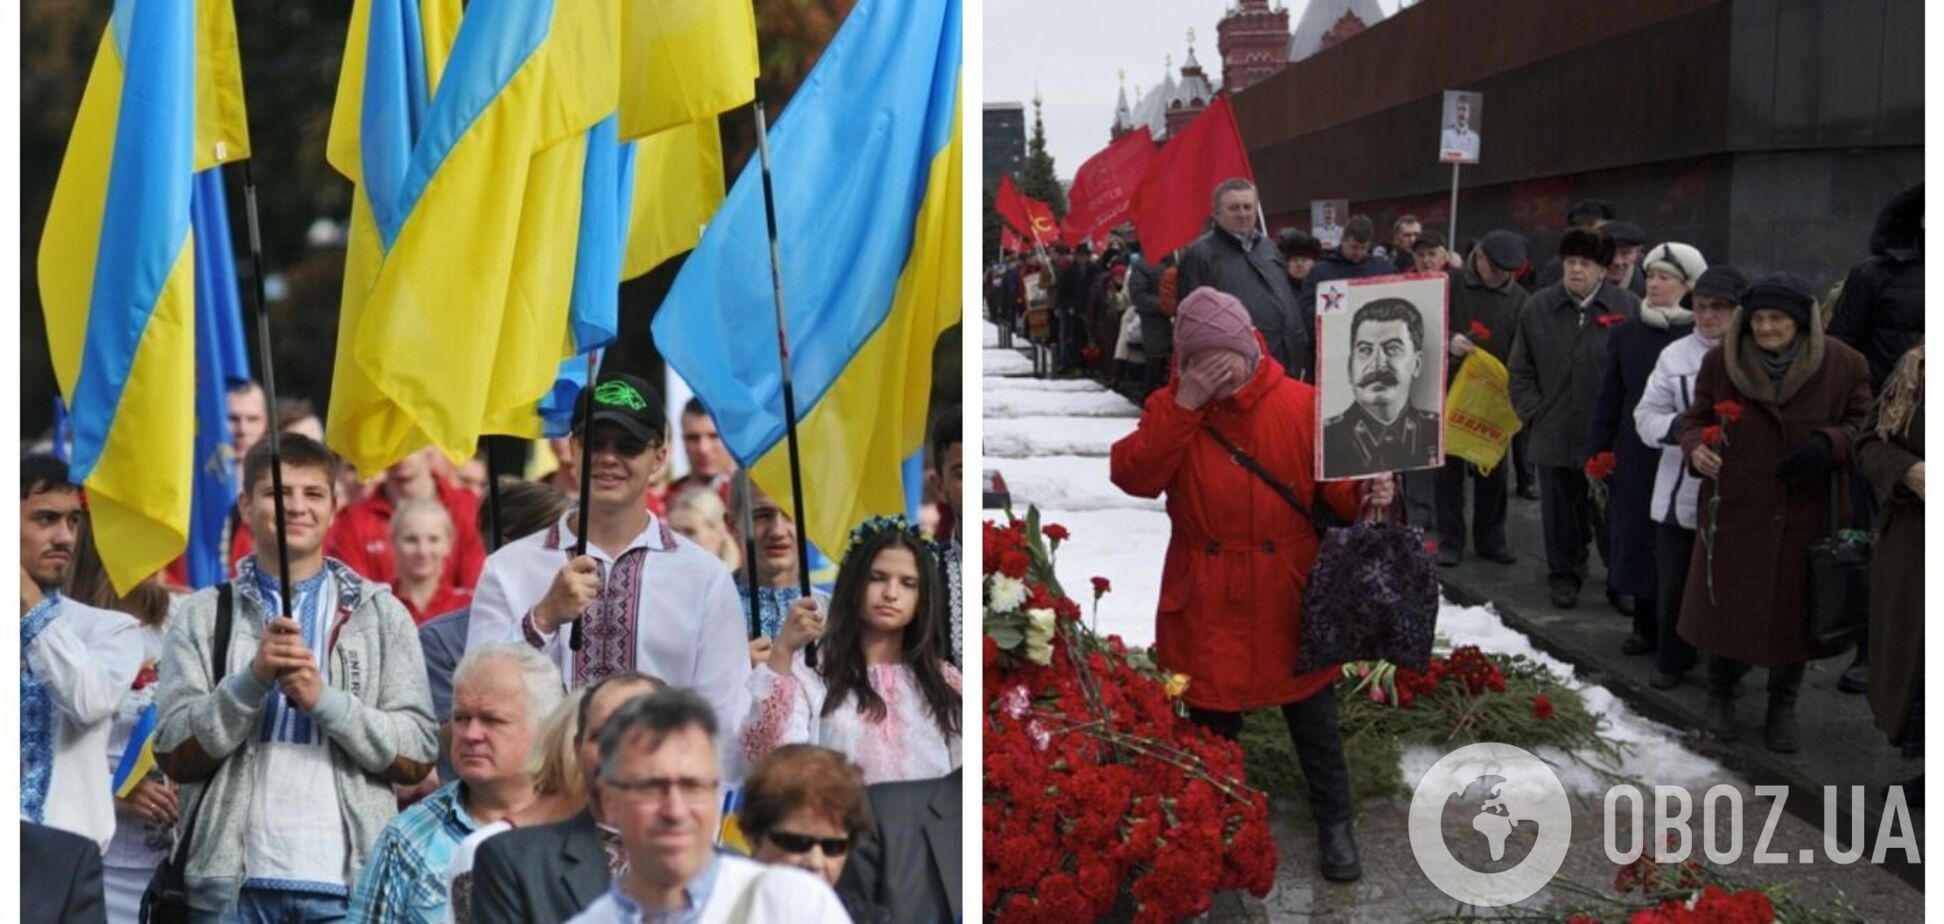 Разница все больше: как украинцы и россияне относятся к Сталину и когда произошел 'перелом' в общественном мнении